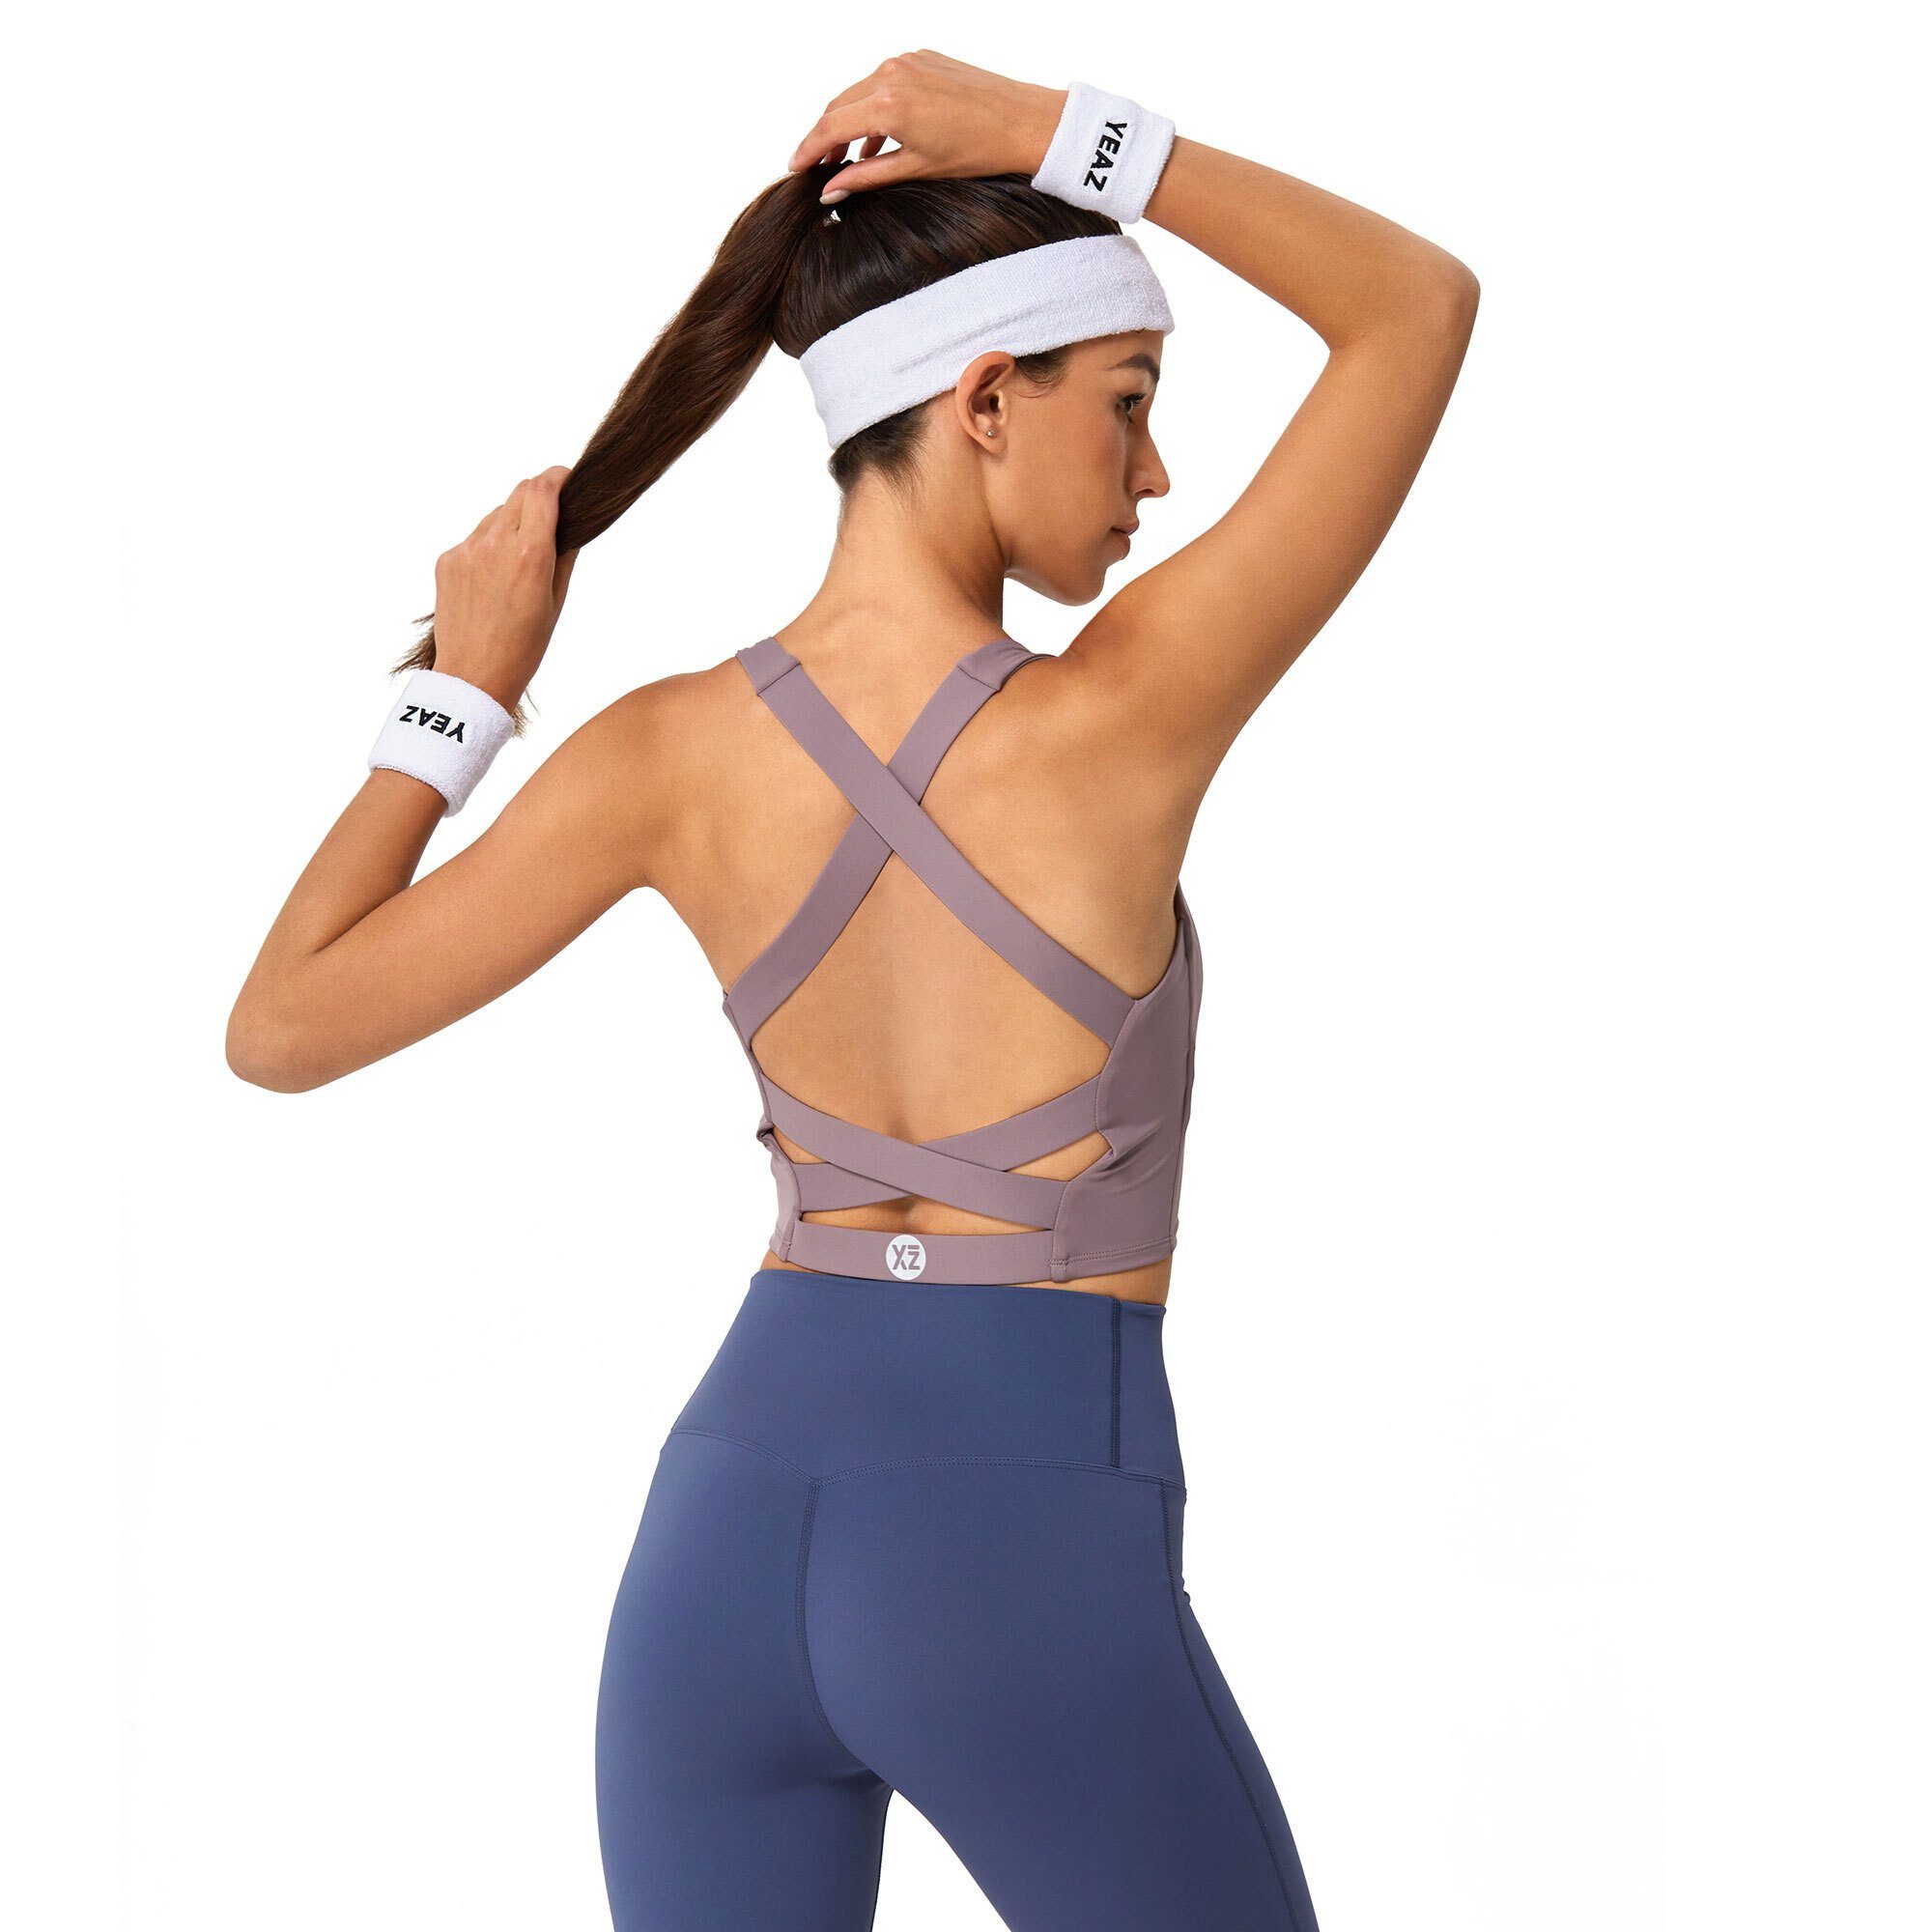 YEAZ Yogatop SHOW top Sportliches, Passform cooles (1-tlg) einzigartiger pink Design mit